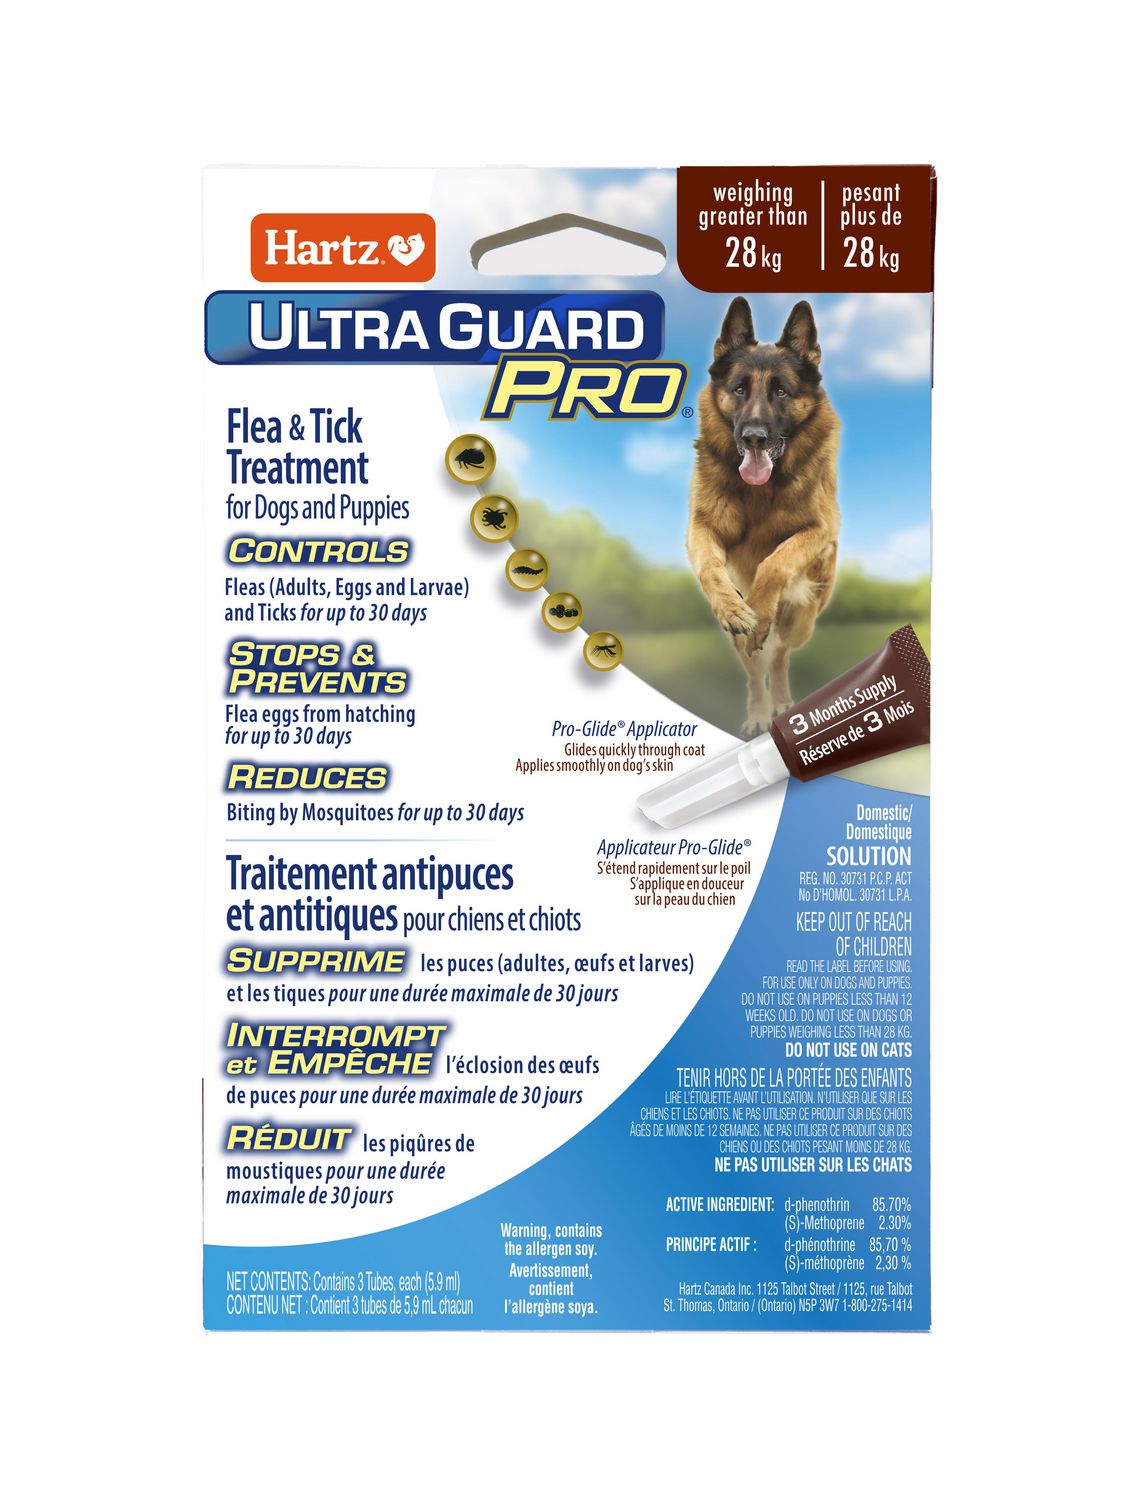 Traitement antipuces et antitiques Ultra Guard Pro de Hartz pour chiens et  chiots Applicateur Pro-Glide. Pour chien plus grand que 28kg/60lbs 